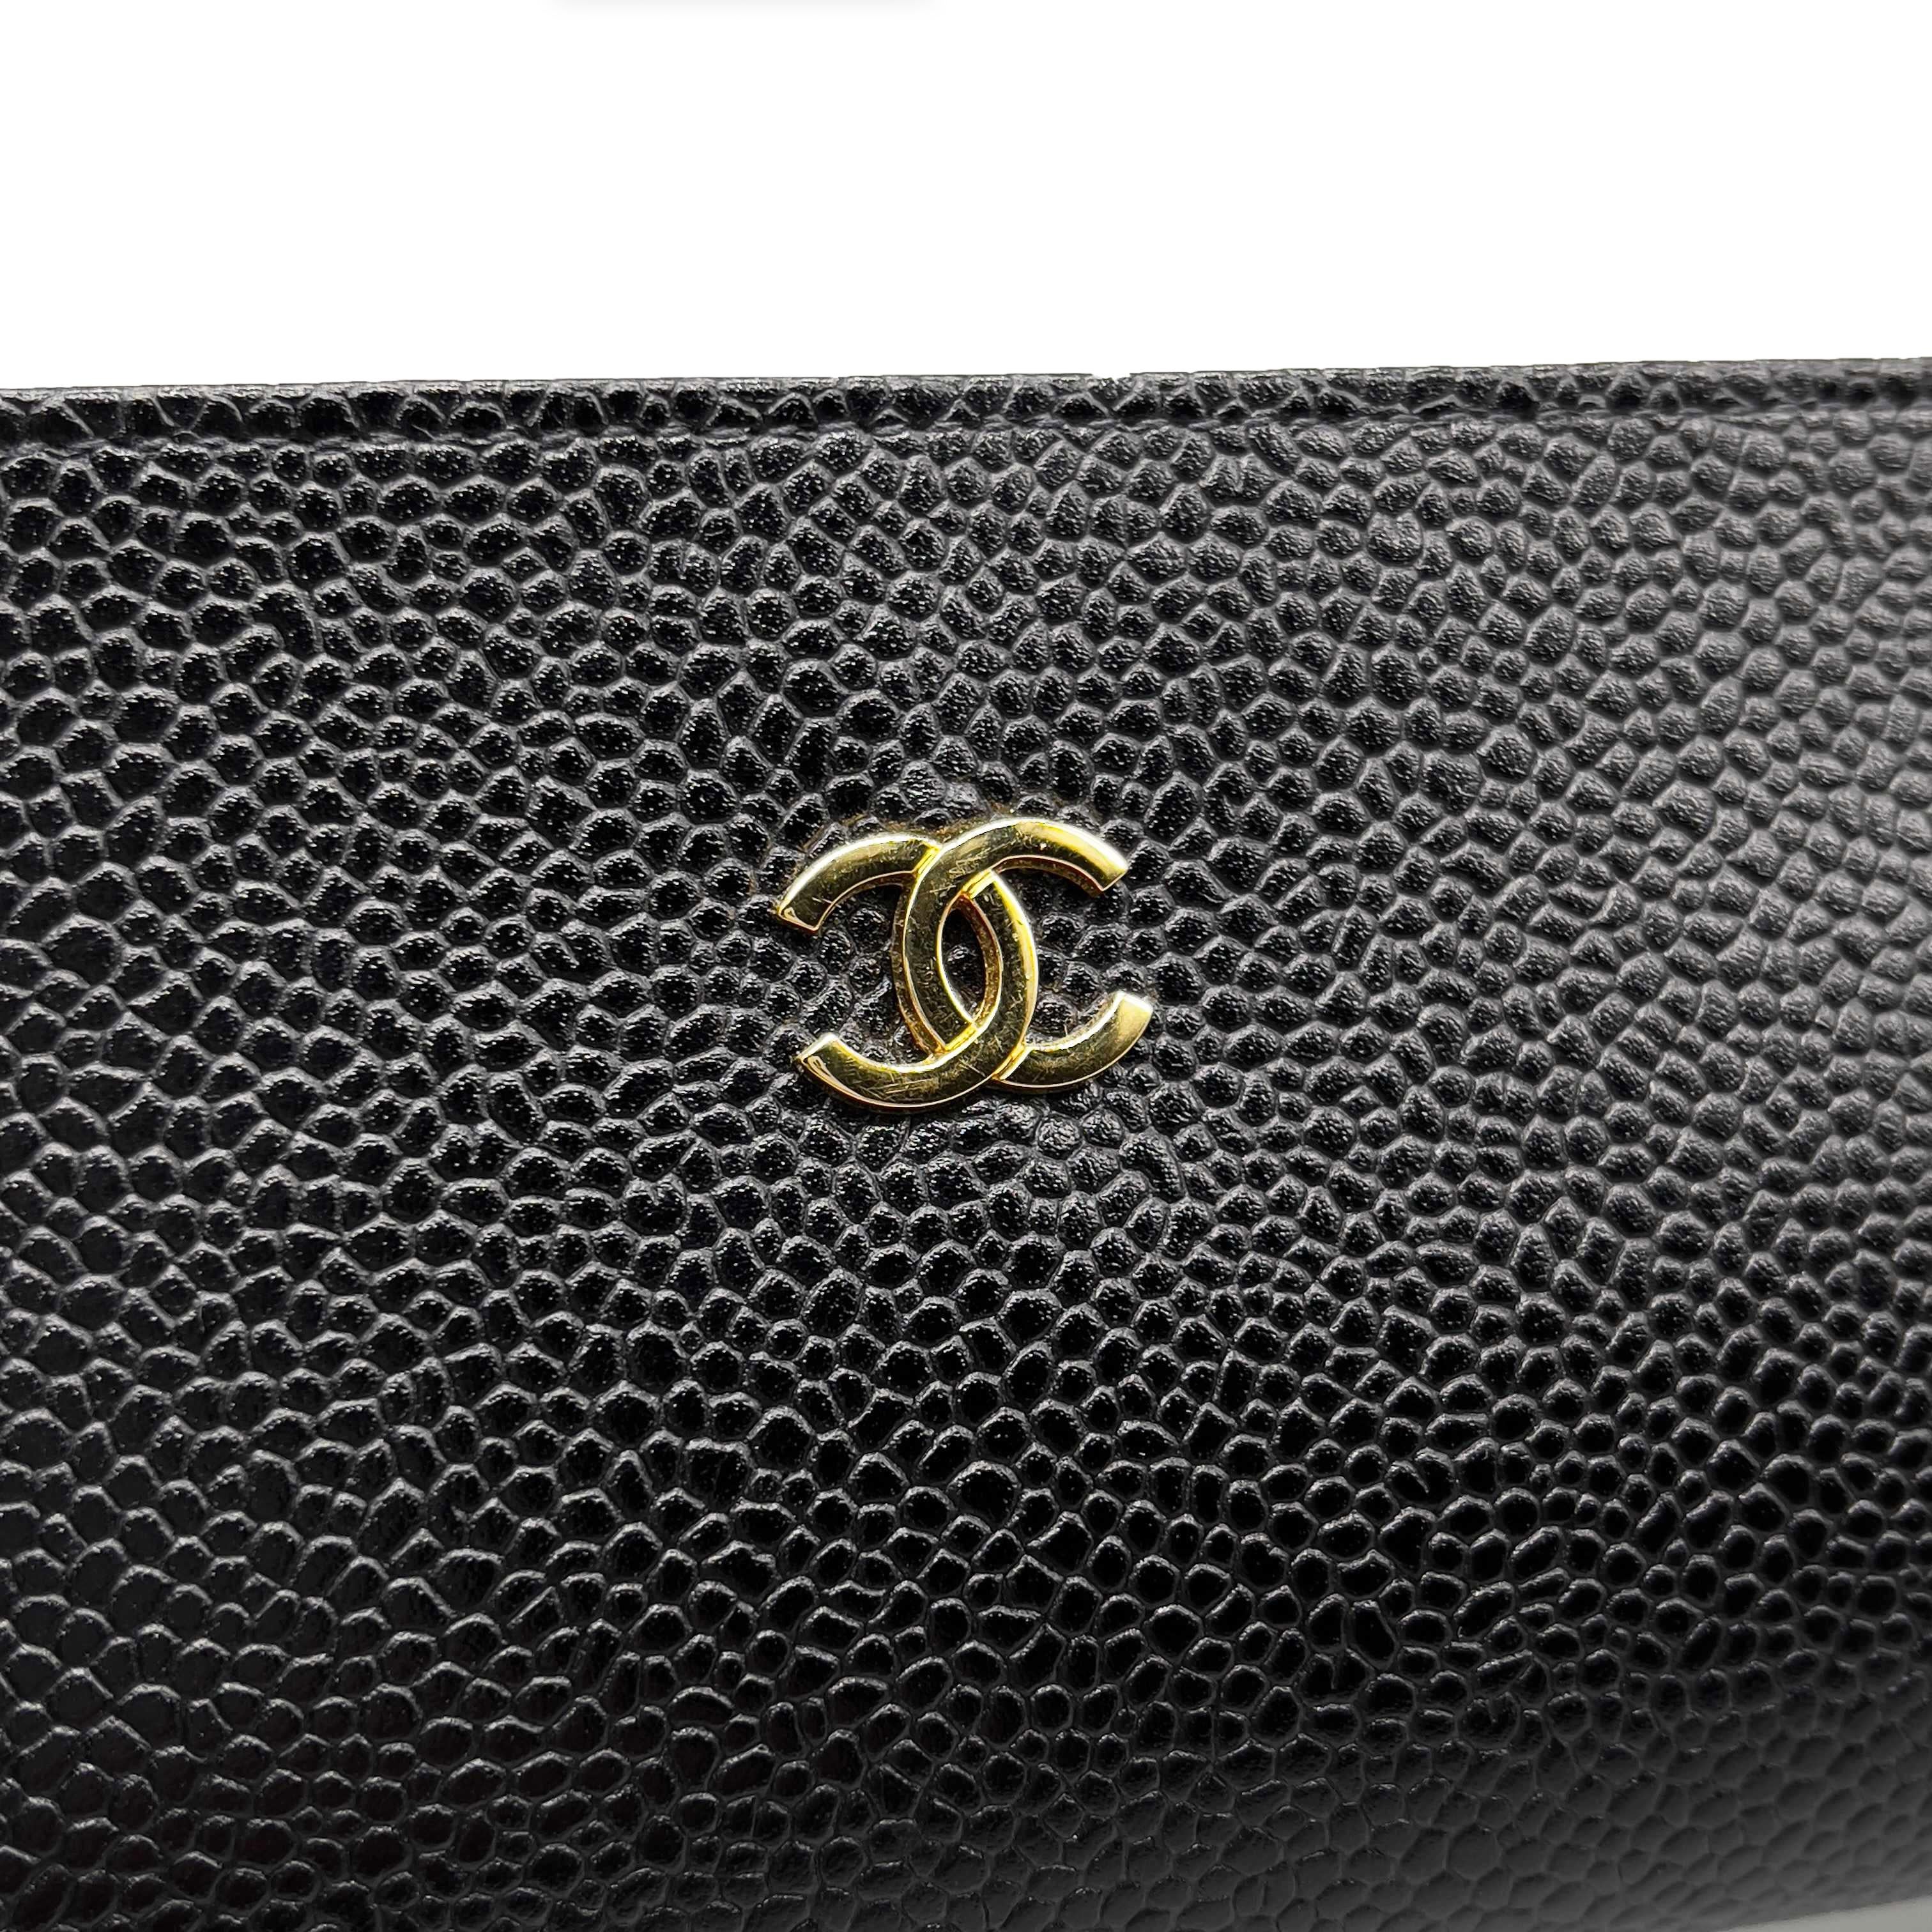 CHANEL - Vintage 1996 Black Case / Pouch / Makeup Bag Caviar Leather / CC Logo 1